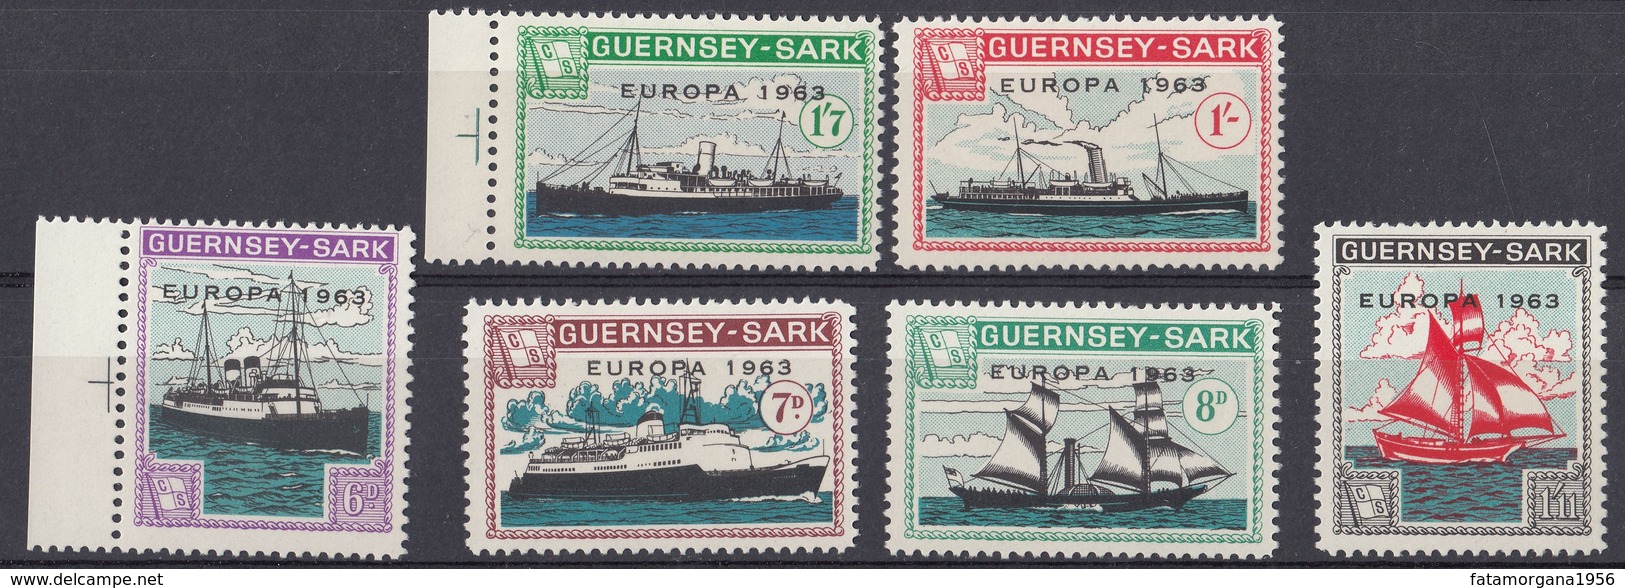 GUERNSEY Local Mail To SARK - 1963 - Europa - Serie Completa Di 6 Valori MNH Con Margini Di Foglio, Come Da Immagine. - Guernsey